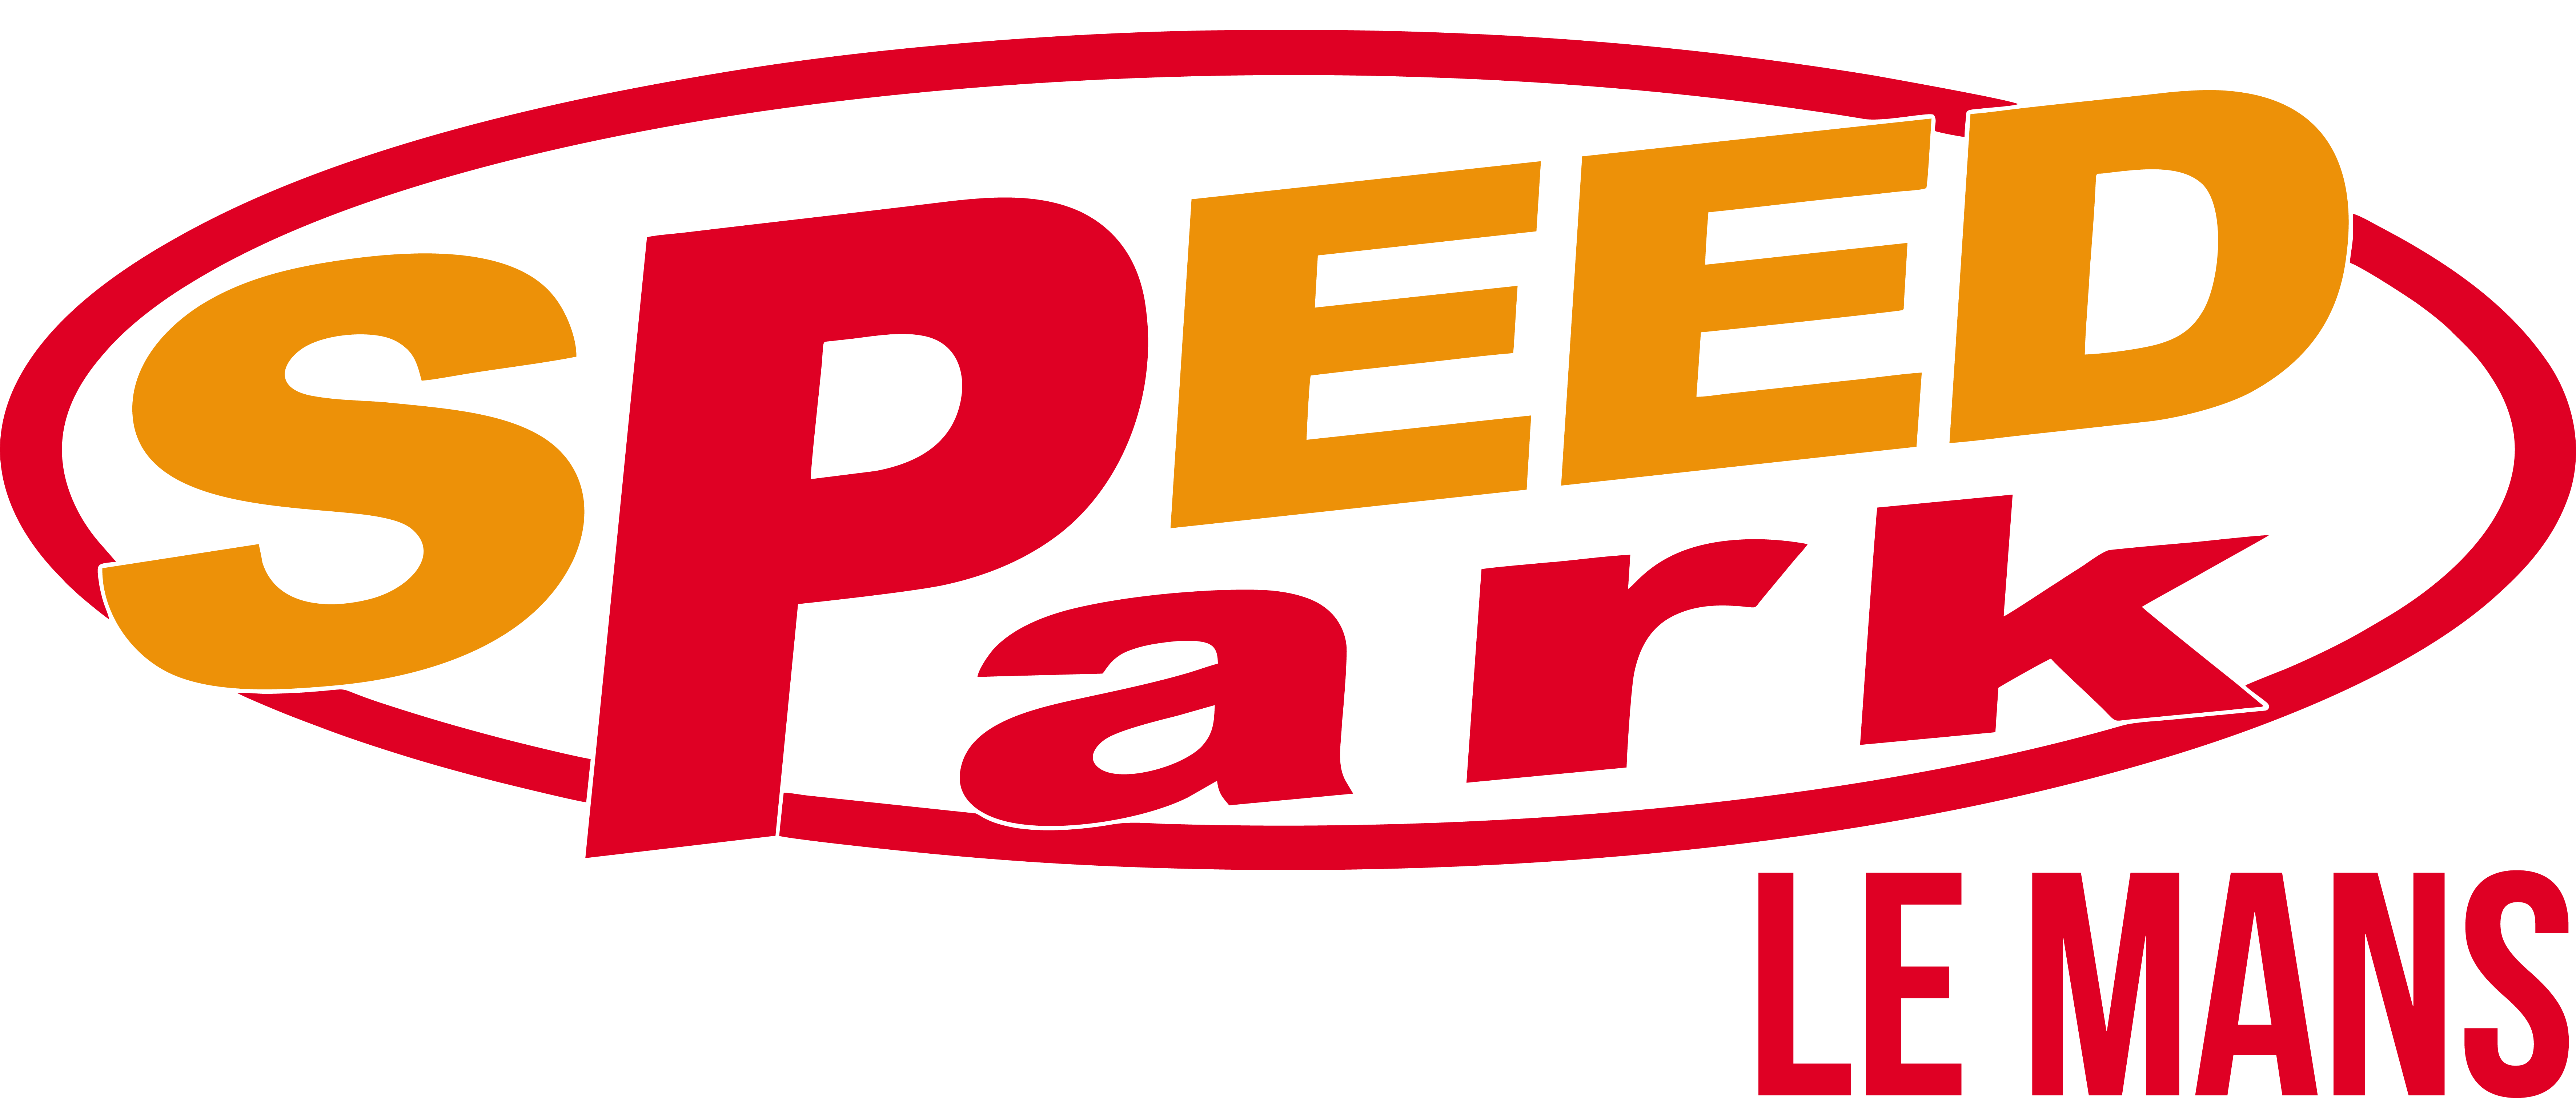 Logo_Le_Mans_HD.png